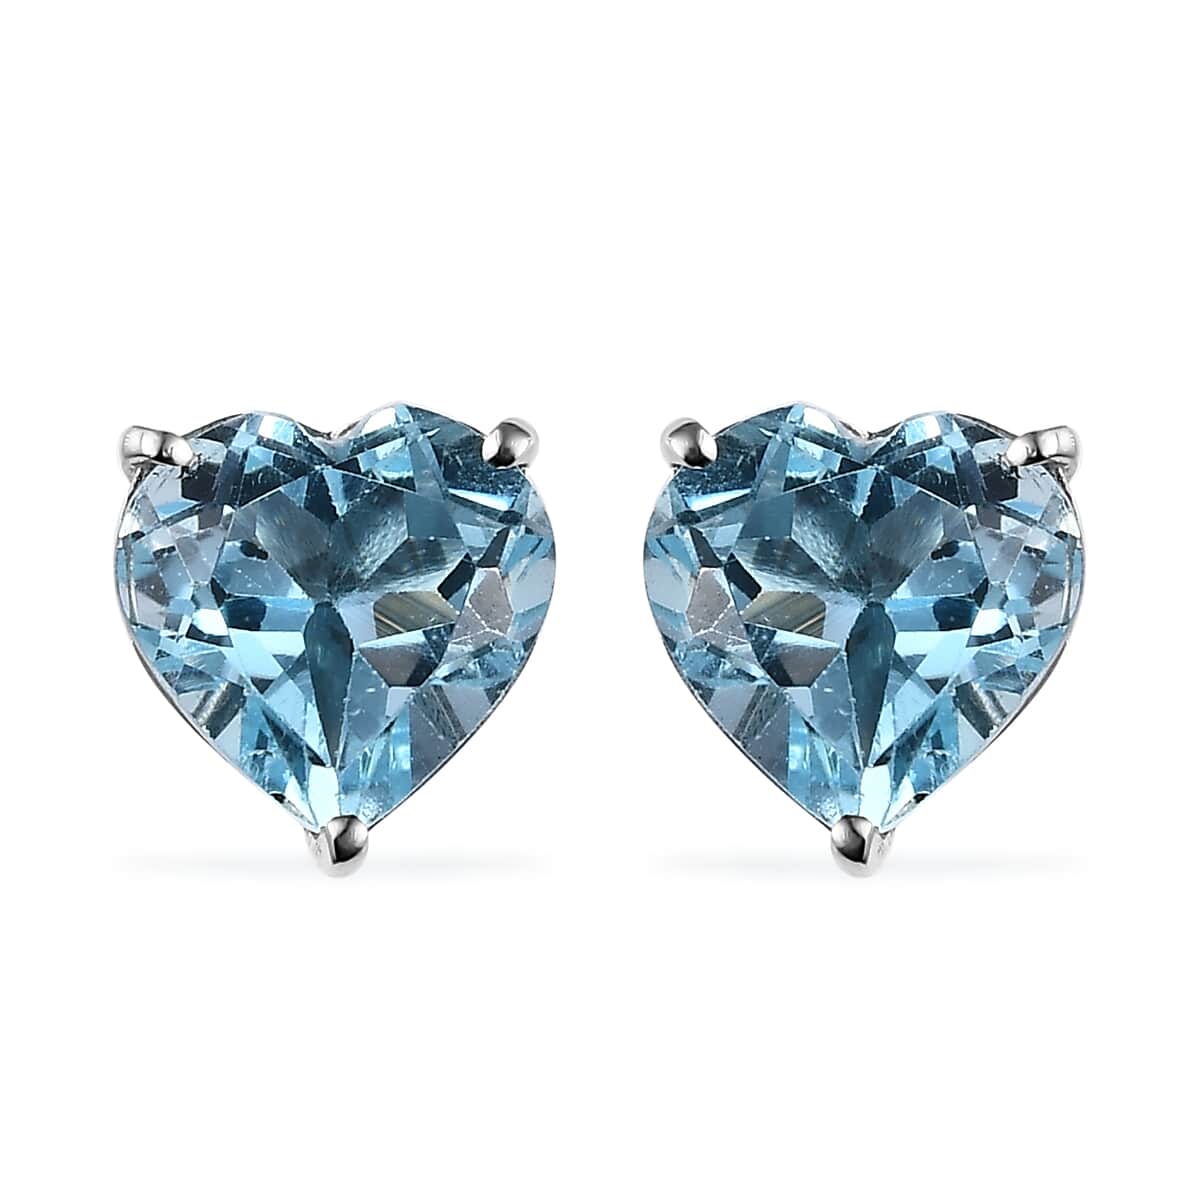 Buy Sky Blue Topaz Heart Stud Earrings in Platinum Over Sterling